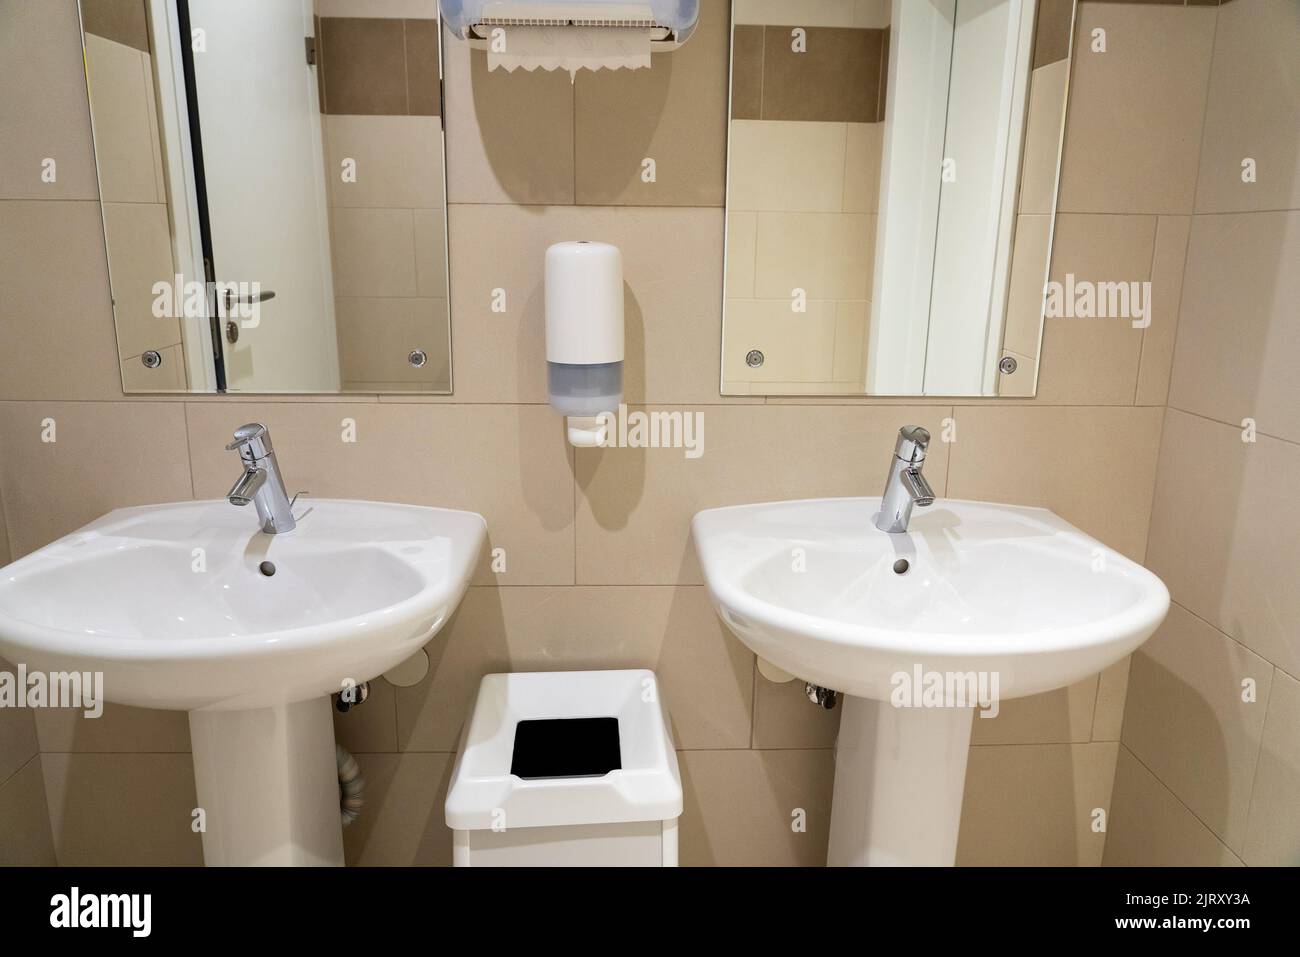 Photo de référence des éviers en céramique dans une salle de bains publique avec un porte-savon et un panier à déchets Banque D'Images